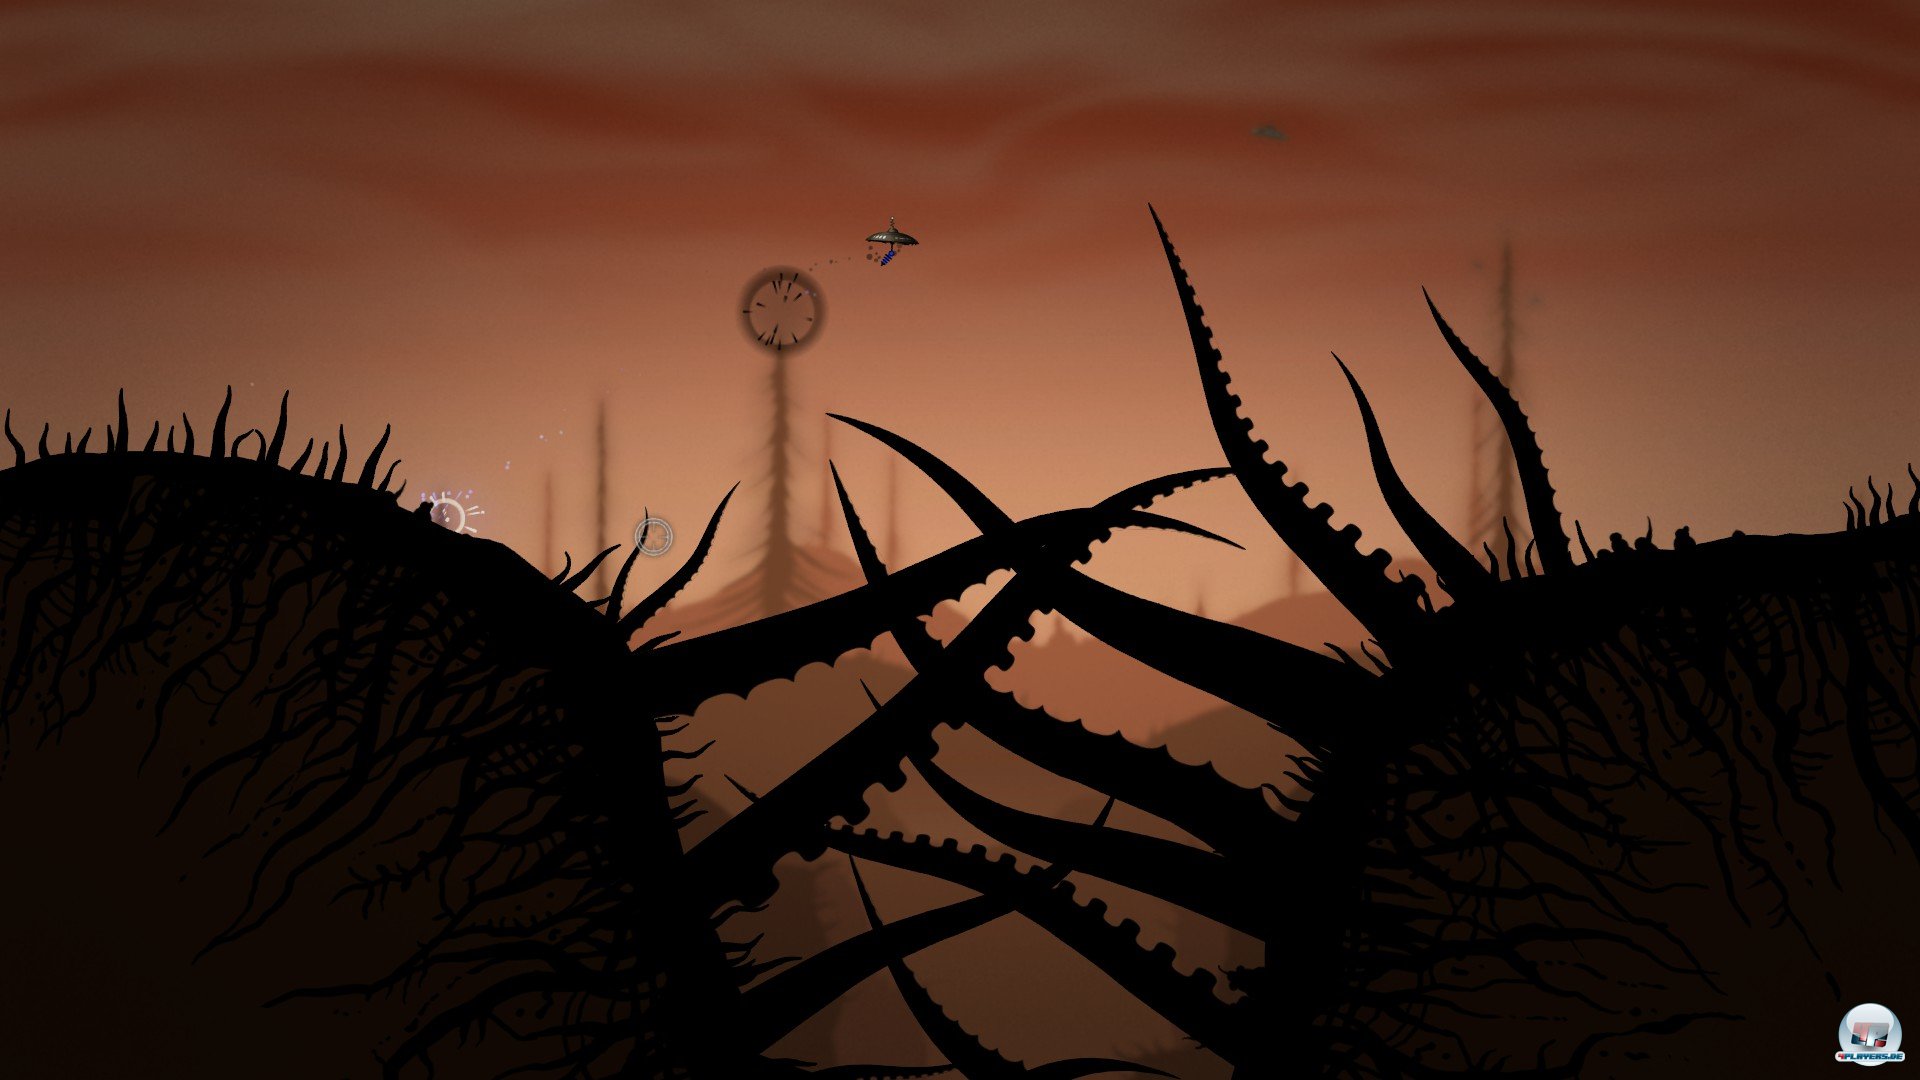 Der abgefahrene Grafikstil macht Insanely Twisted Shadow Planet einzigartig - das Spielprinzip dagegen ist größtenteils bekannt.